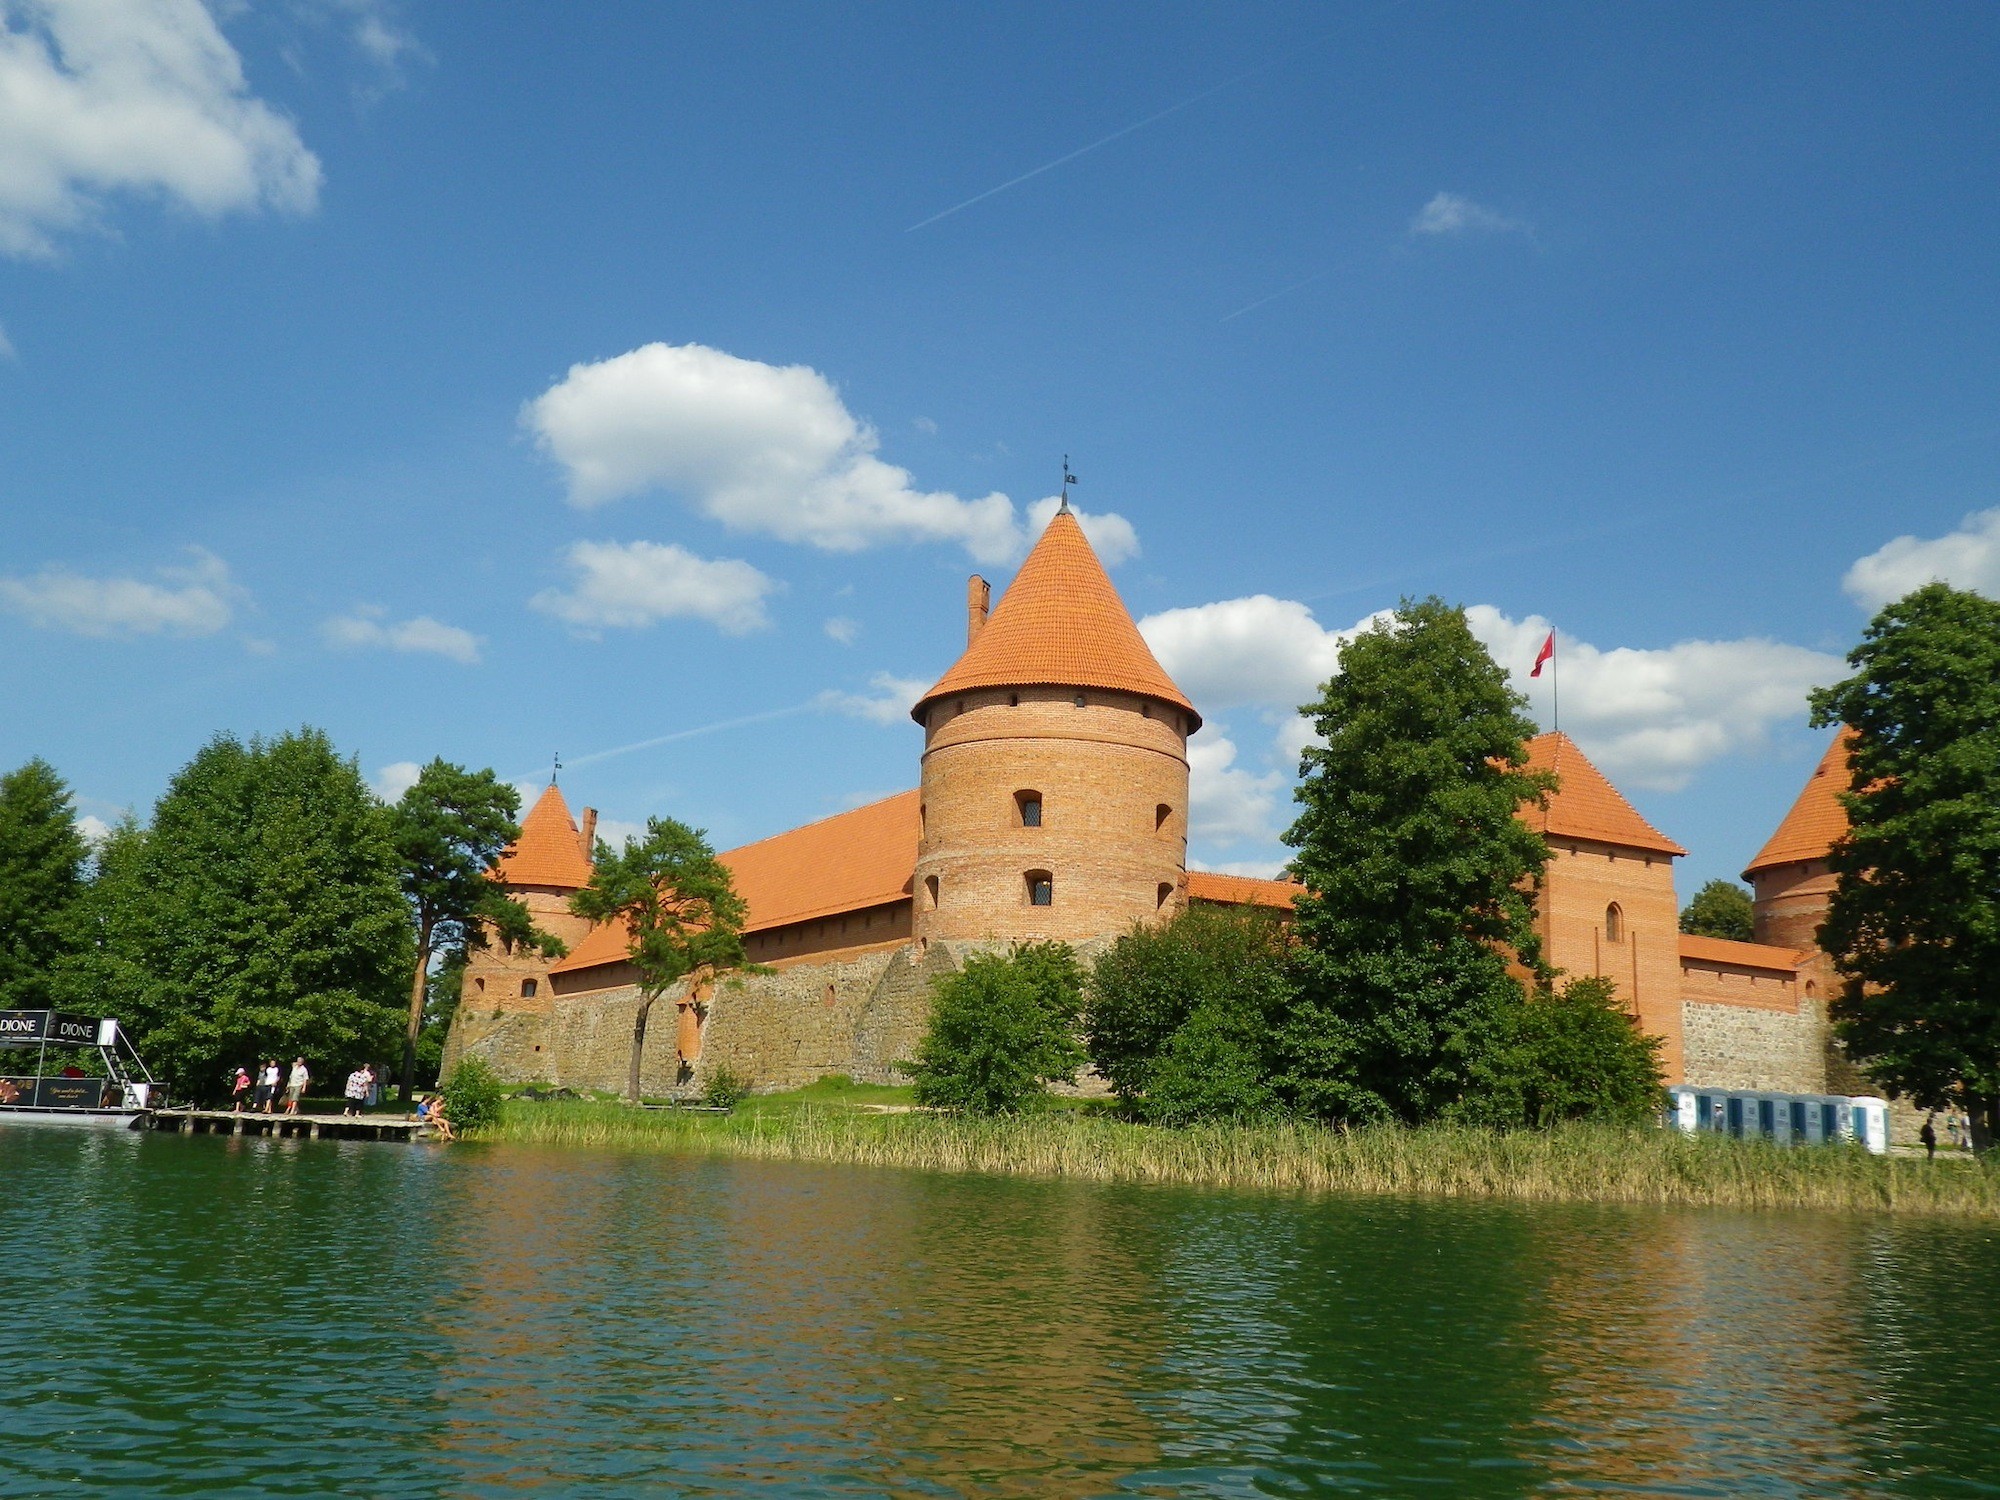 リトアニア「トラカイ島城」 特集！歴史が詰まる湖上の名城、人気のリゾート地を訪れよう